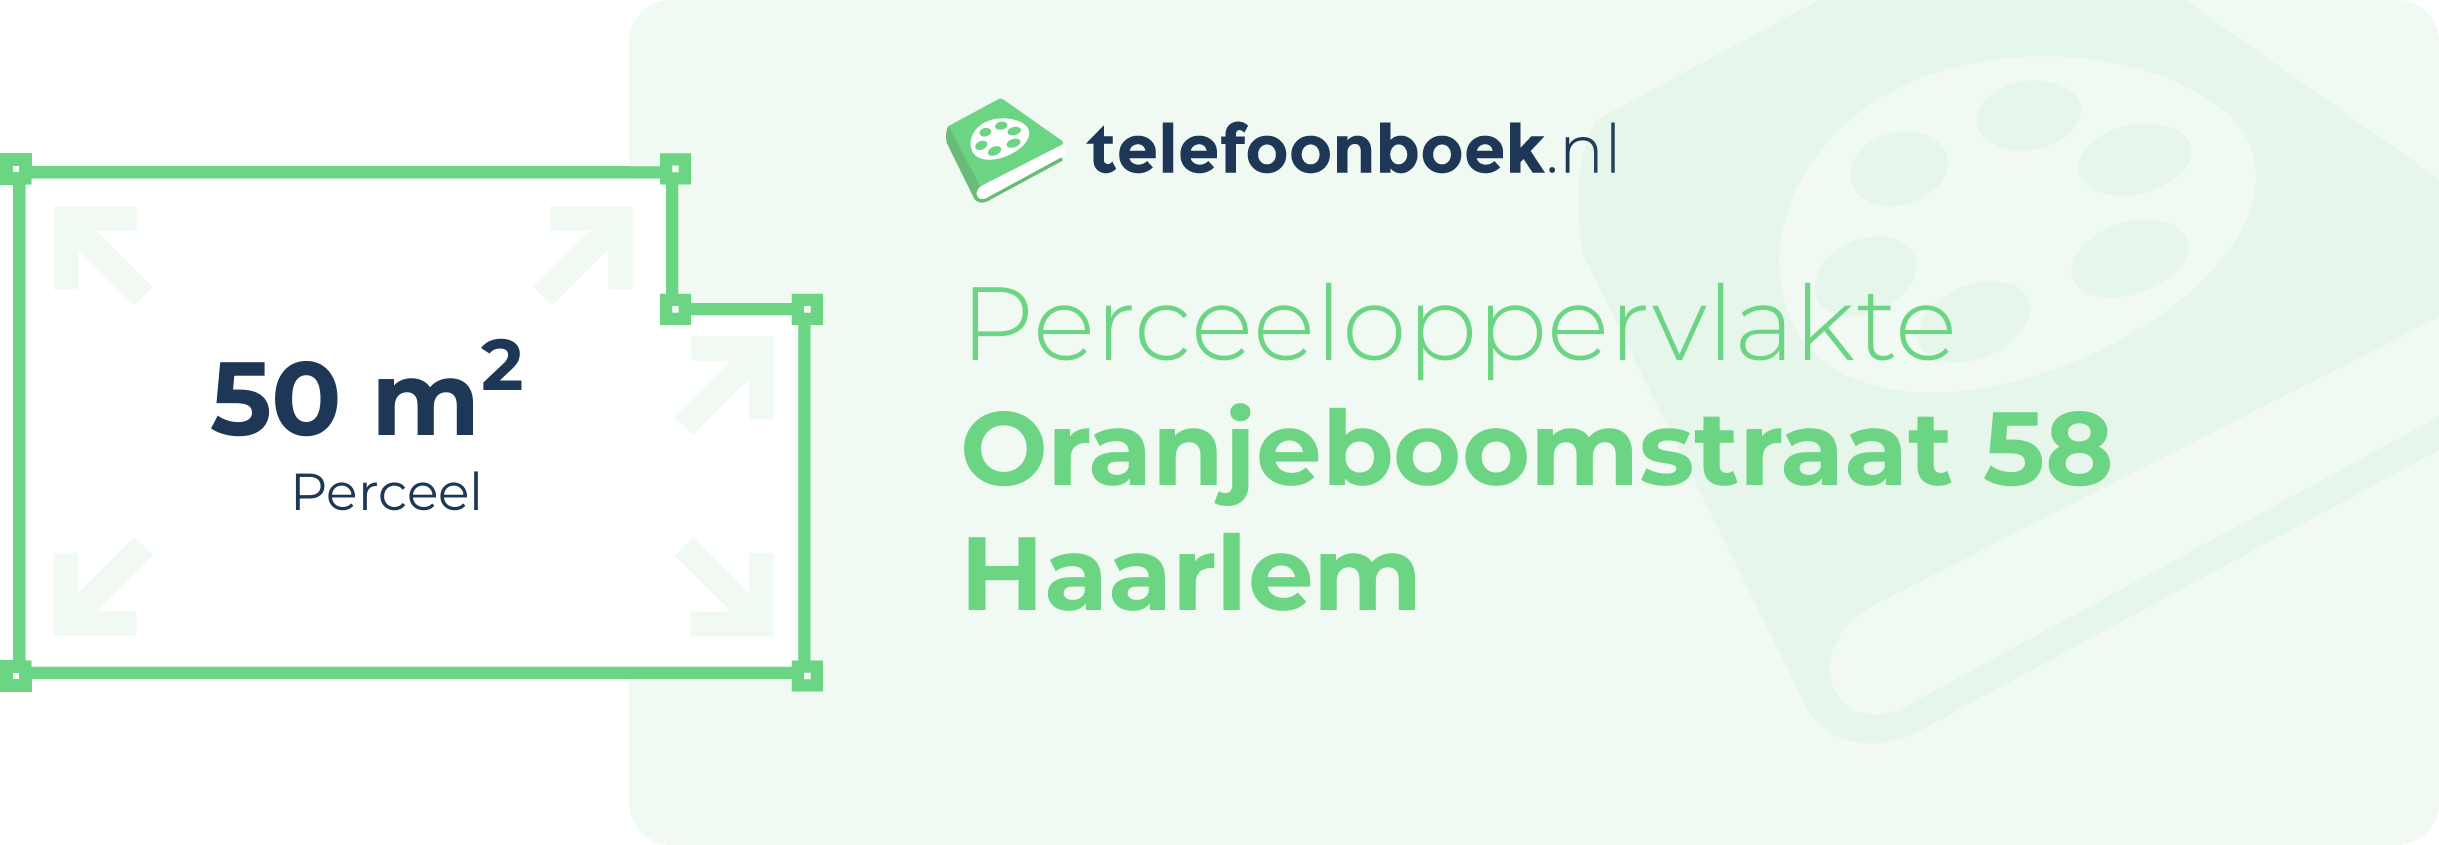 Perceeloppervlakte Oranjeboomstraat 58 Haarlem